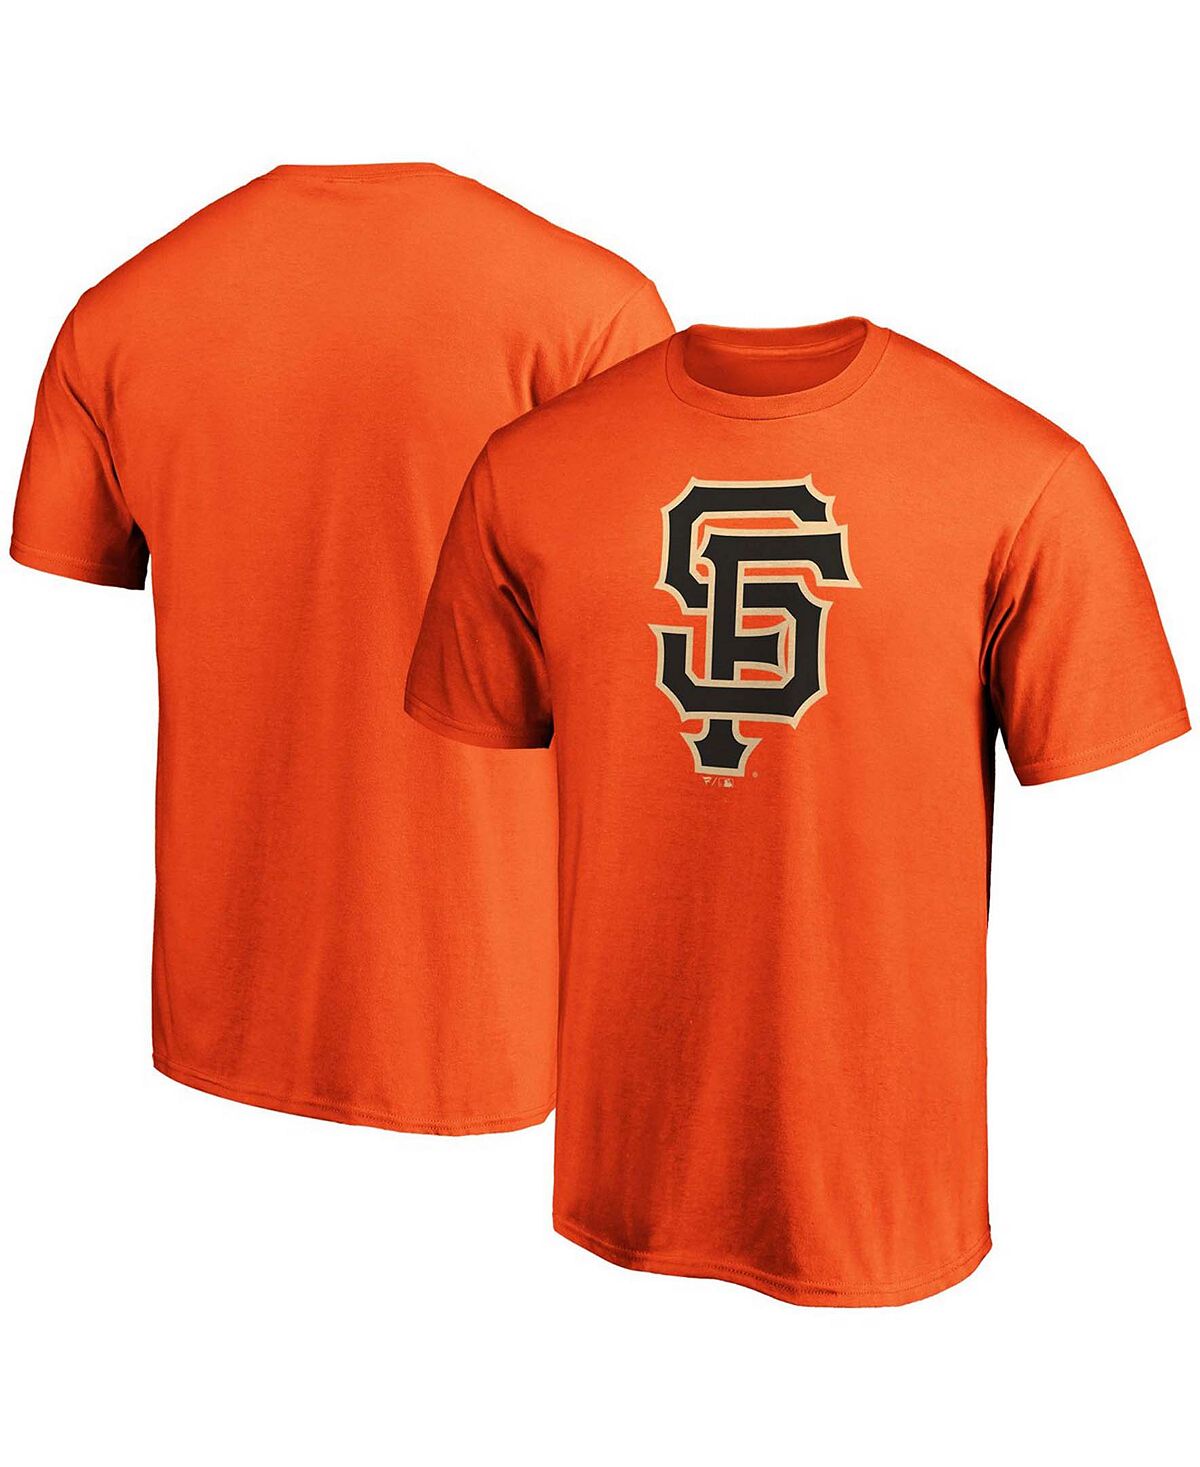 Мужская футболка orange san francisco giants с официальным логотипом Fanatics мужская черная футболка через плечо san francisco giants nike